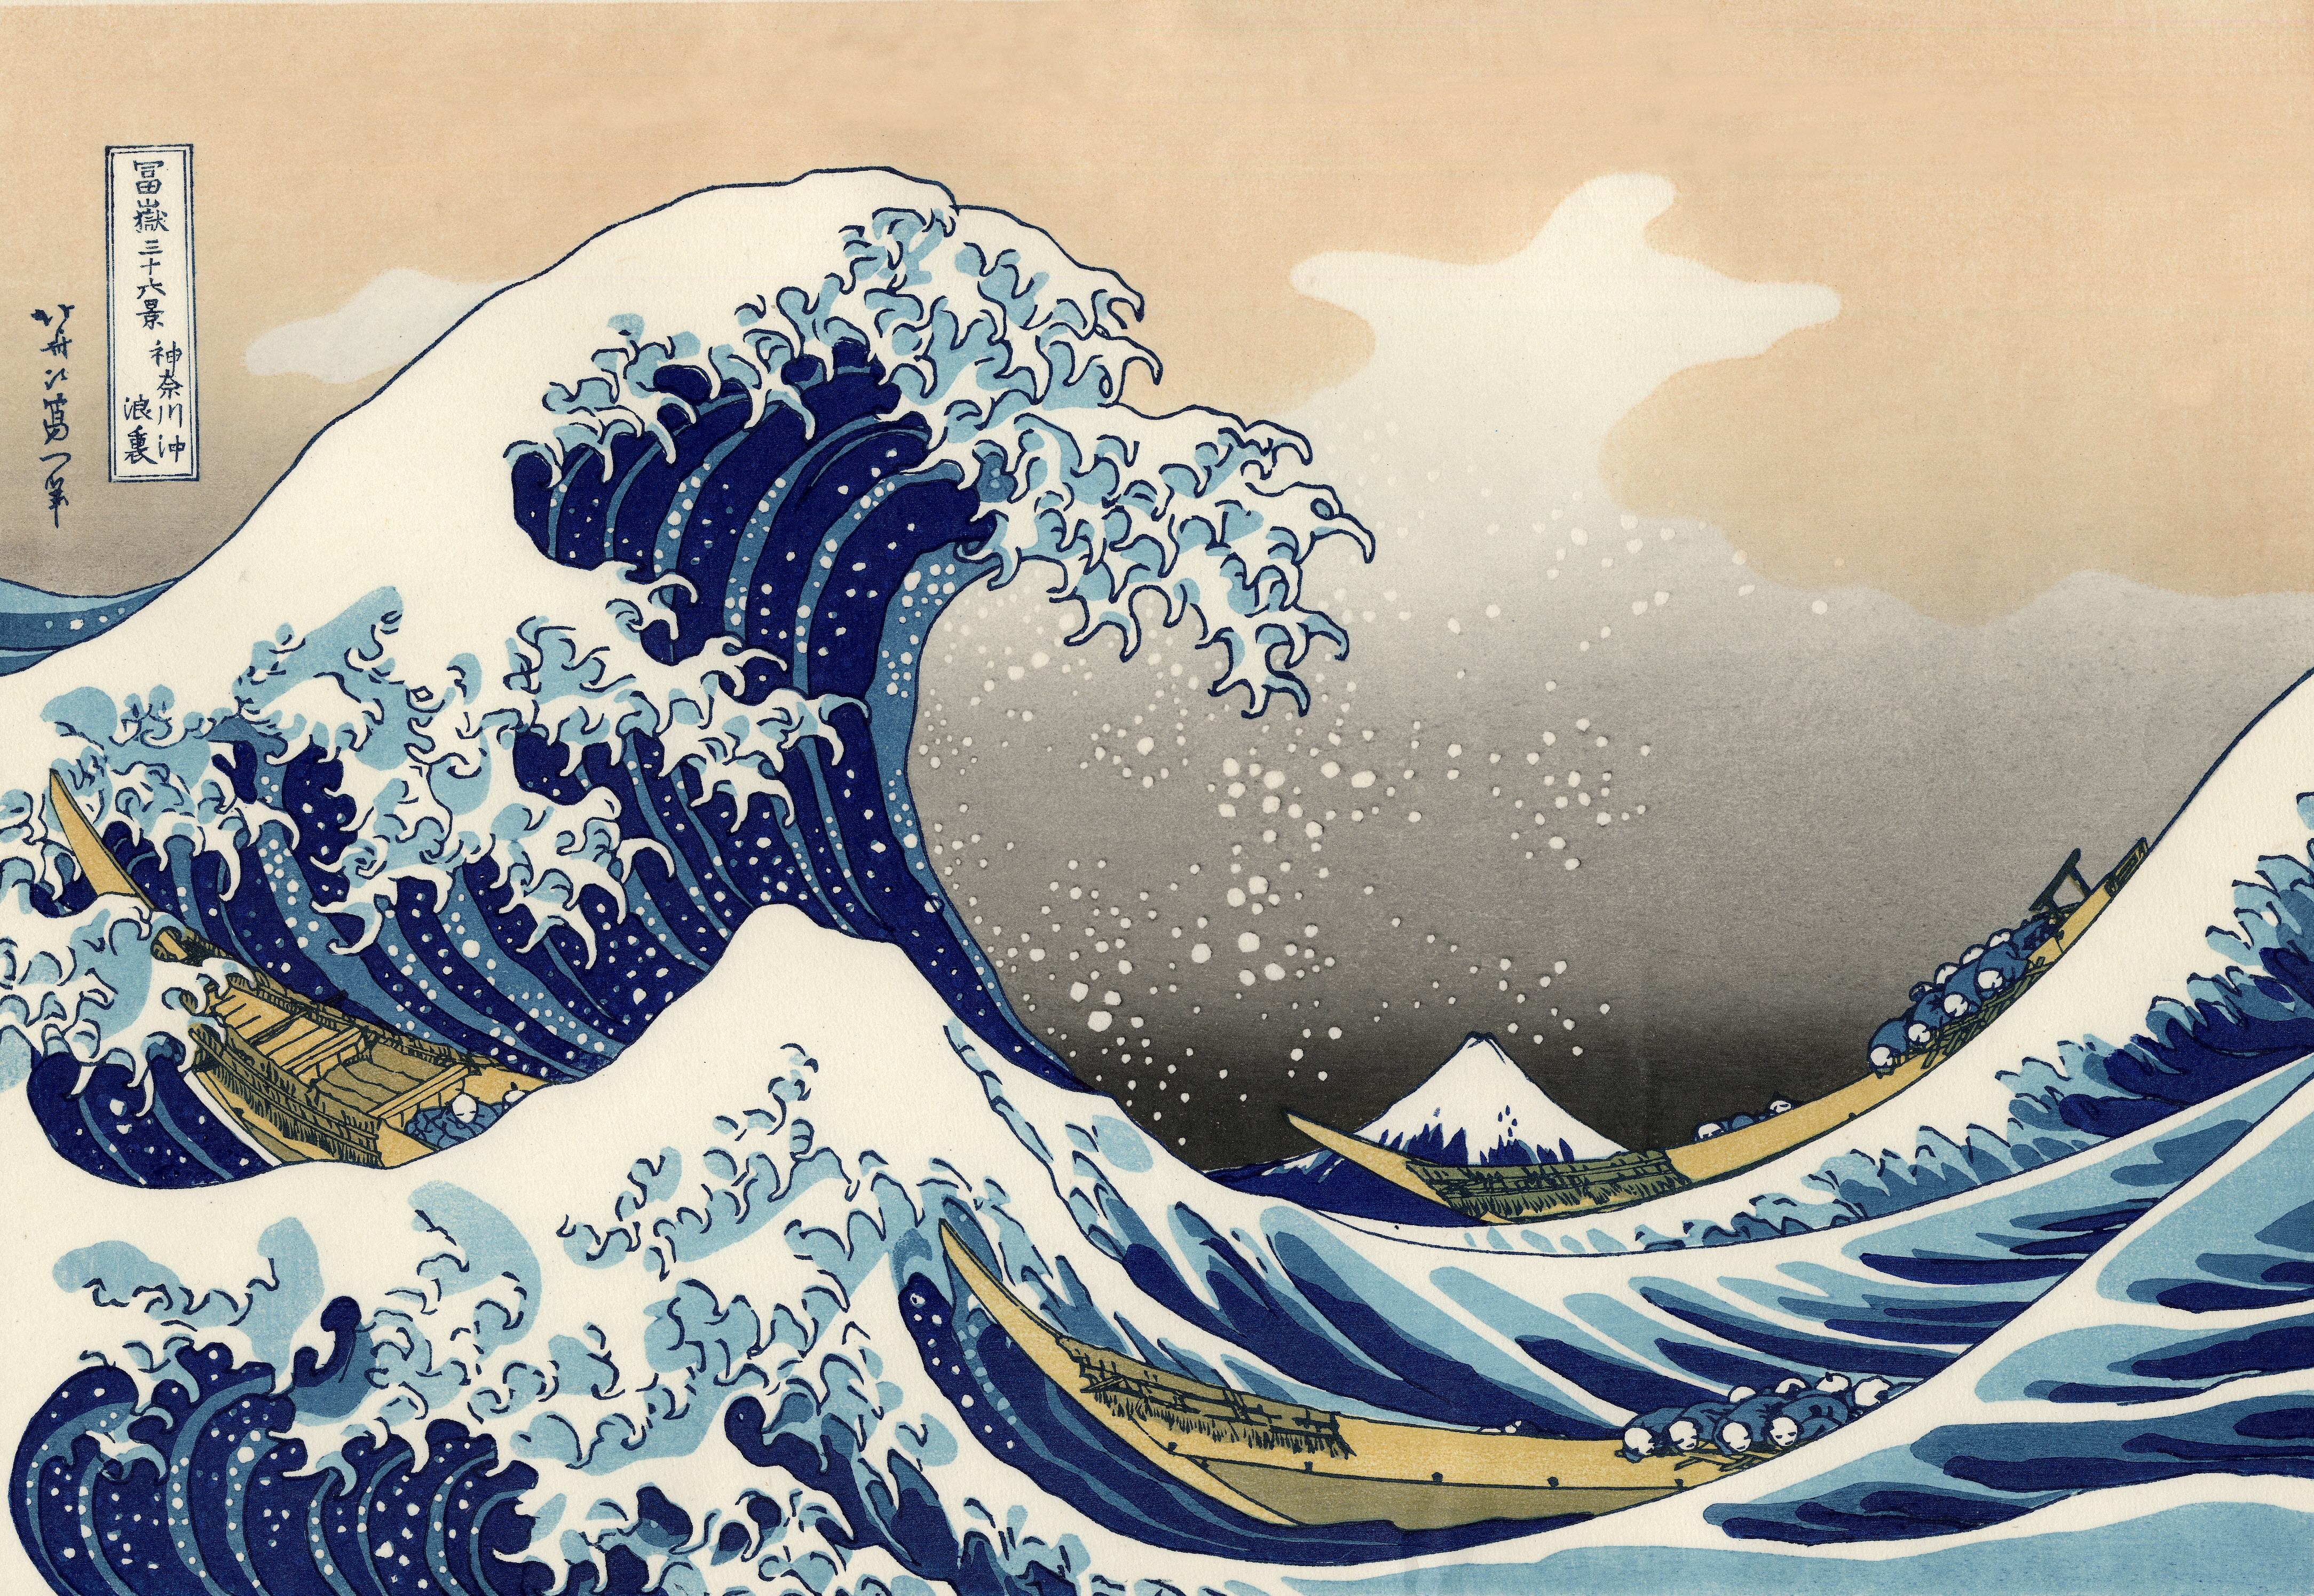 «Bajo una ola en altamar en Kanagawa», también conocida simplemente como La ola o La gran ola, es una famosa estampa japonesa del pintor especialista en ukiyo-e, Katsushika Hokusai, publicada entre 1830 y 1833,​ durante el período Edo de la historia de Japón.